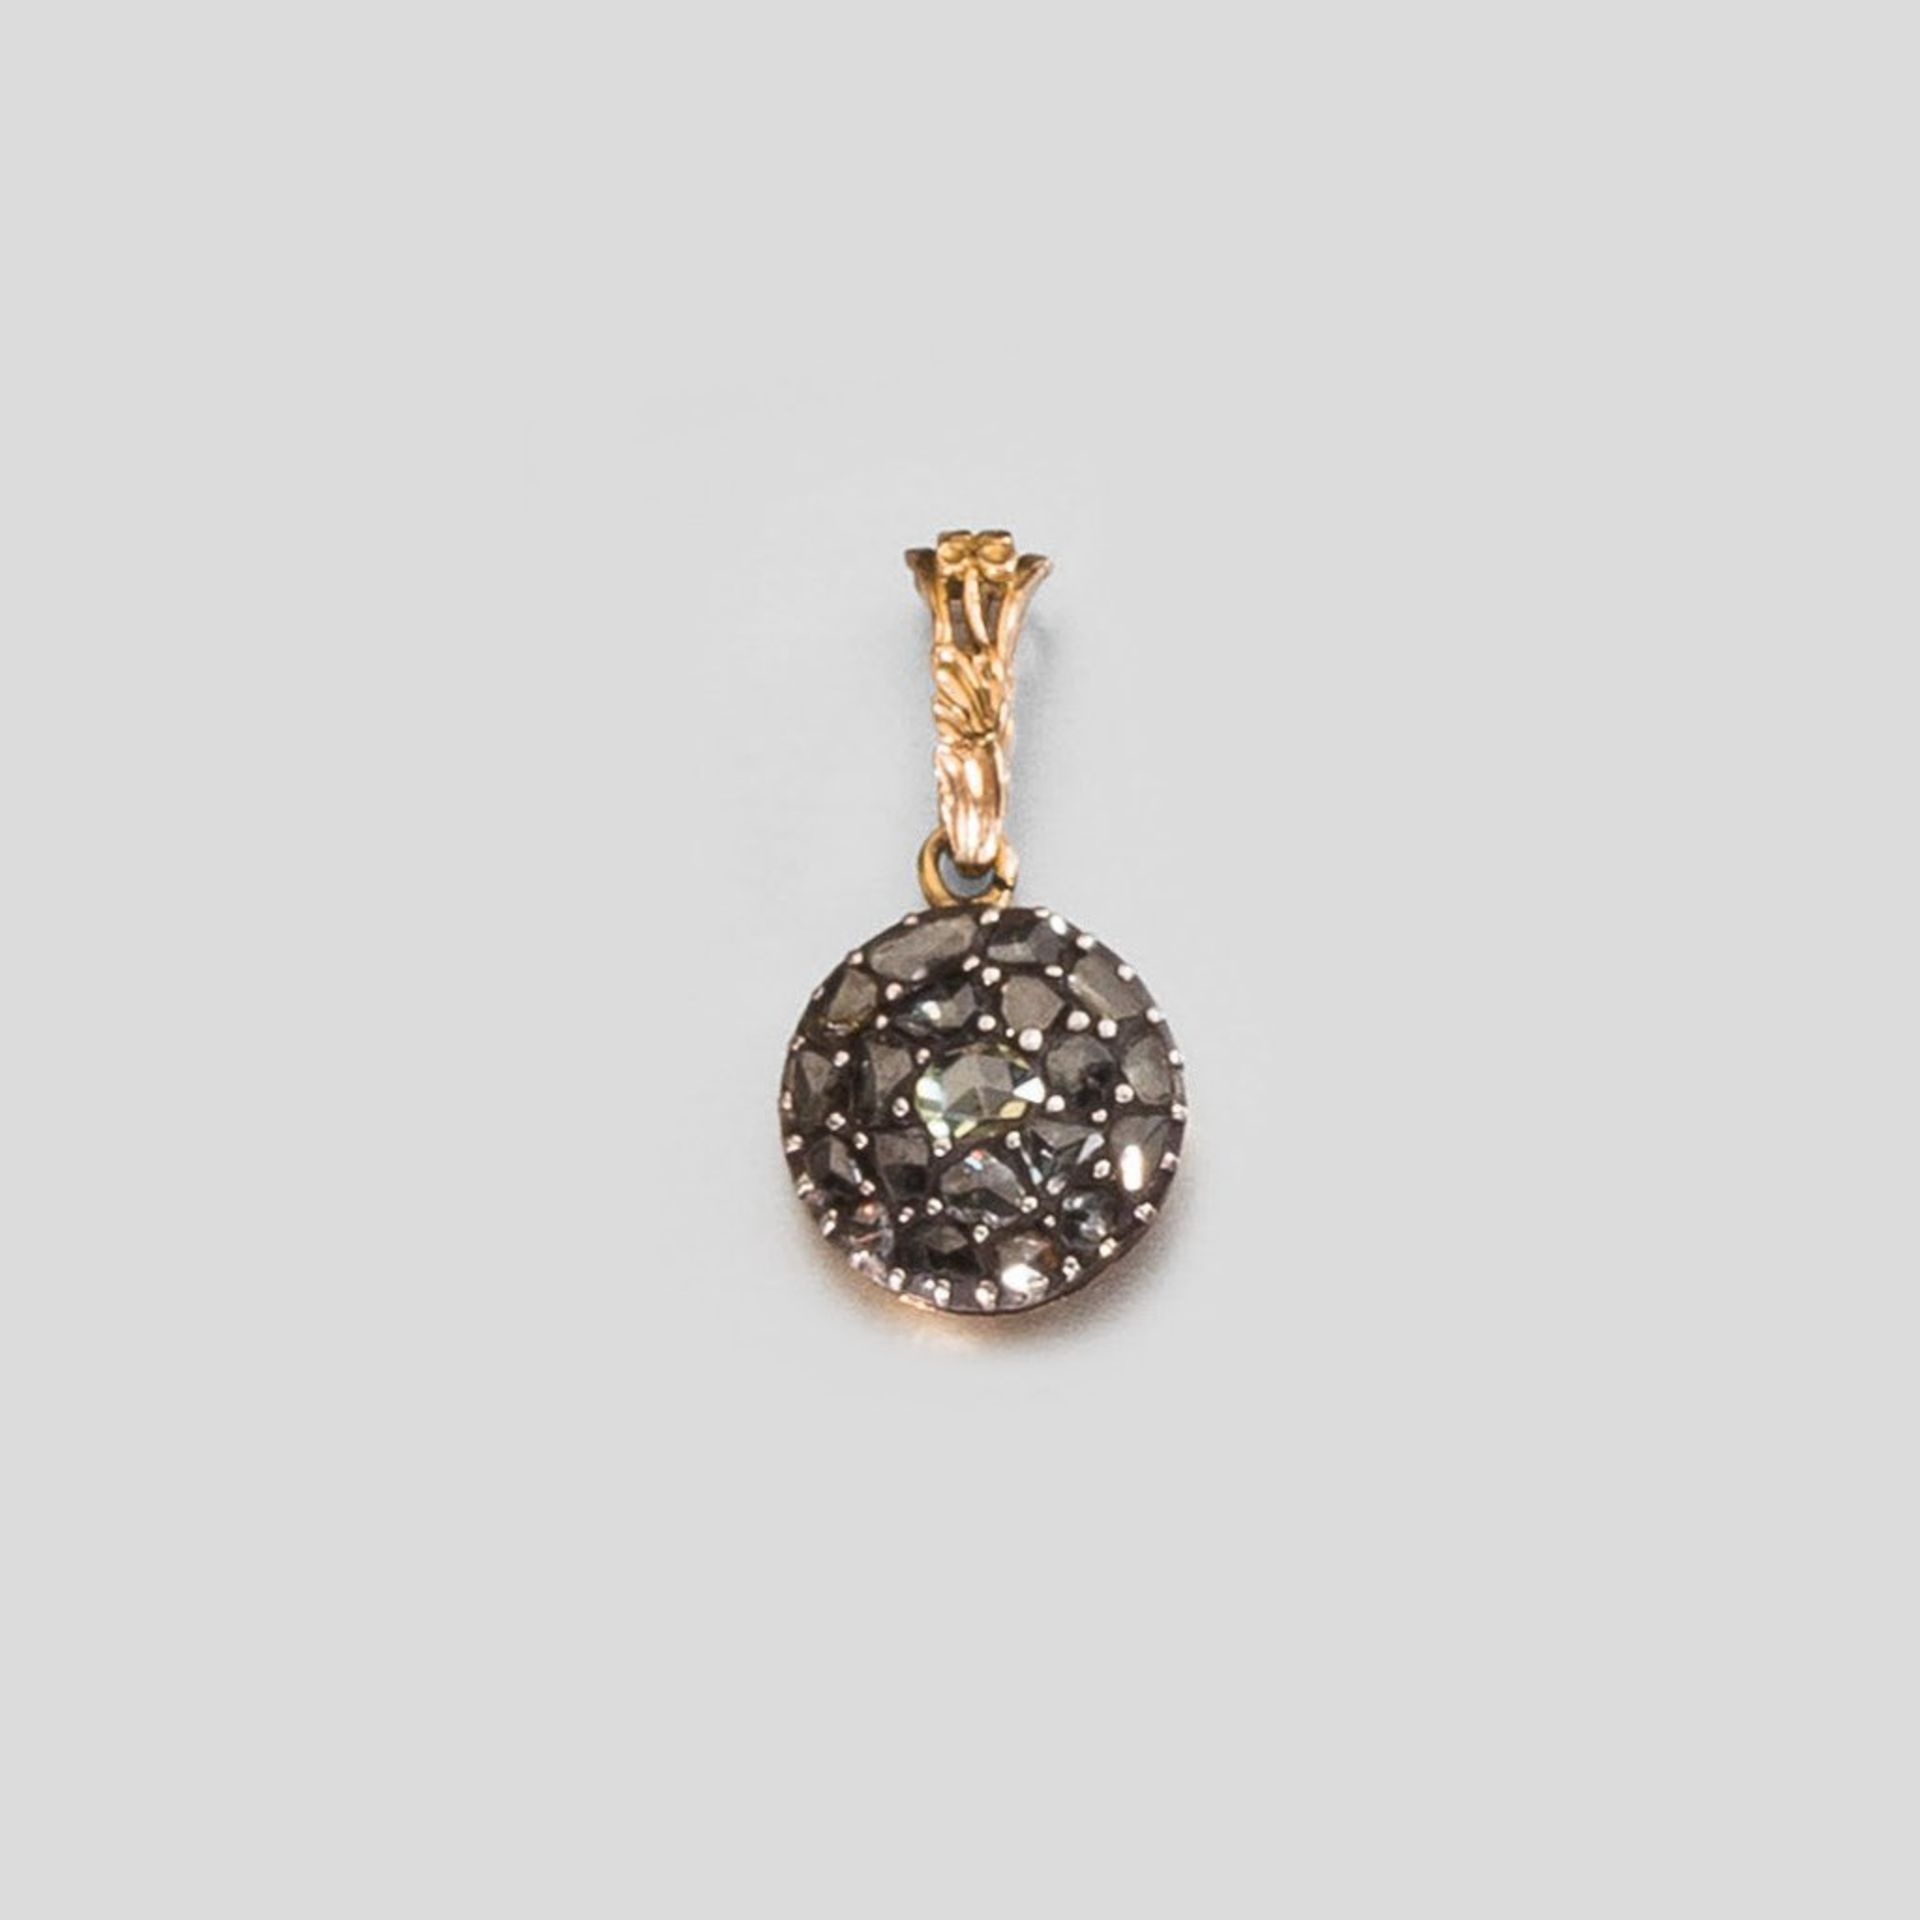 Diamantanhänger. Diamantrosen in Pavé-Fassung. GG und Silber. Um 1900. H 3 cm